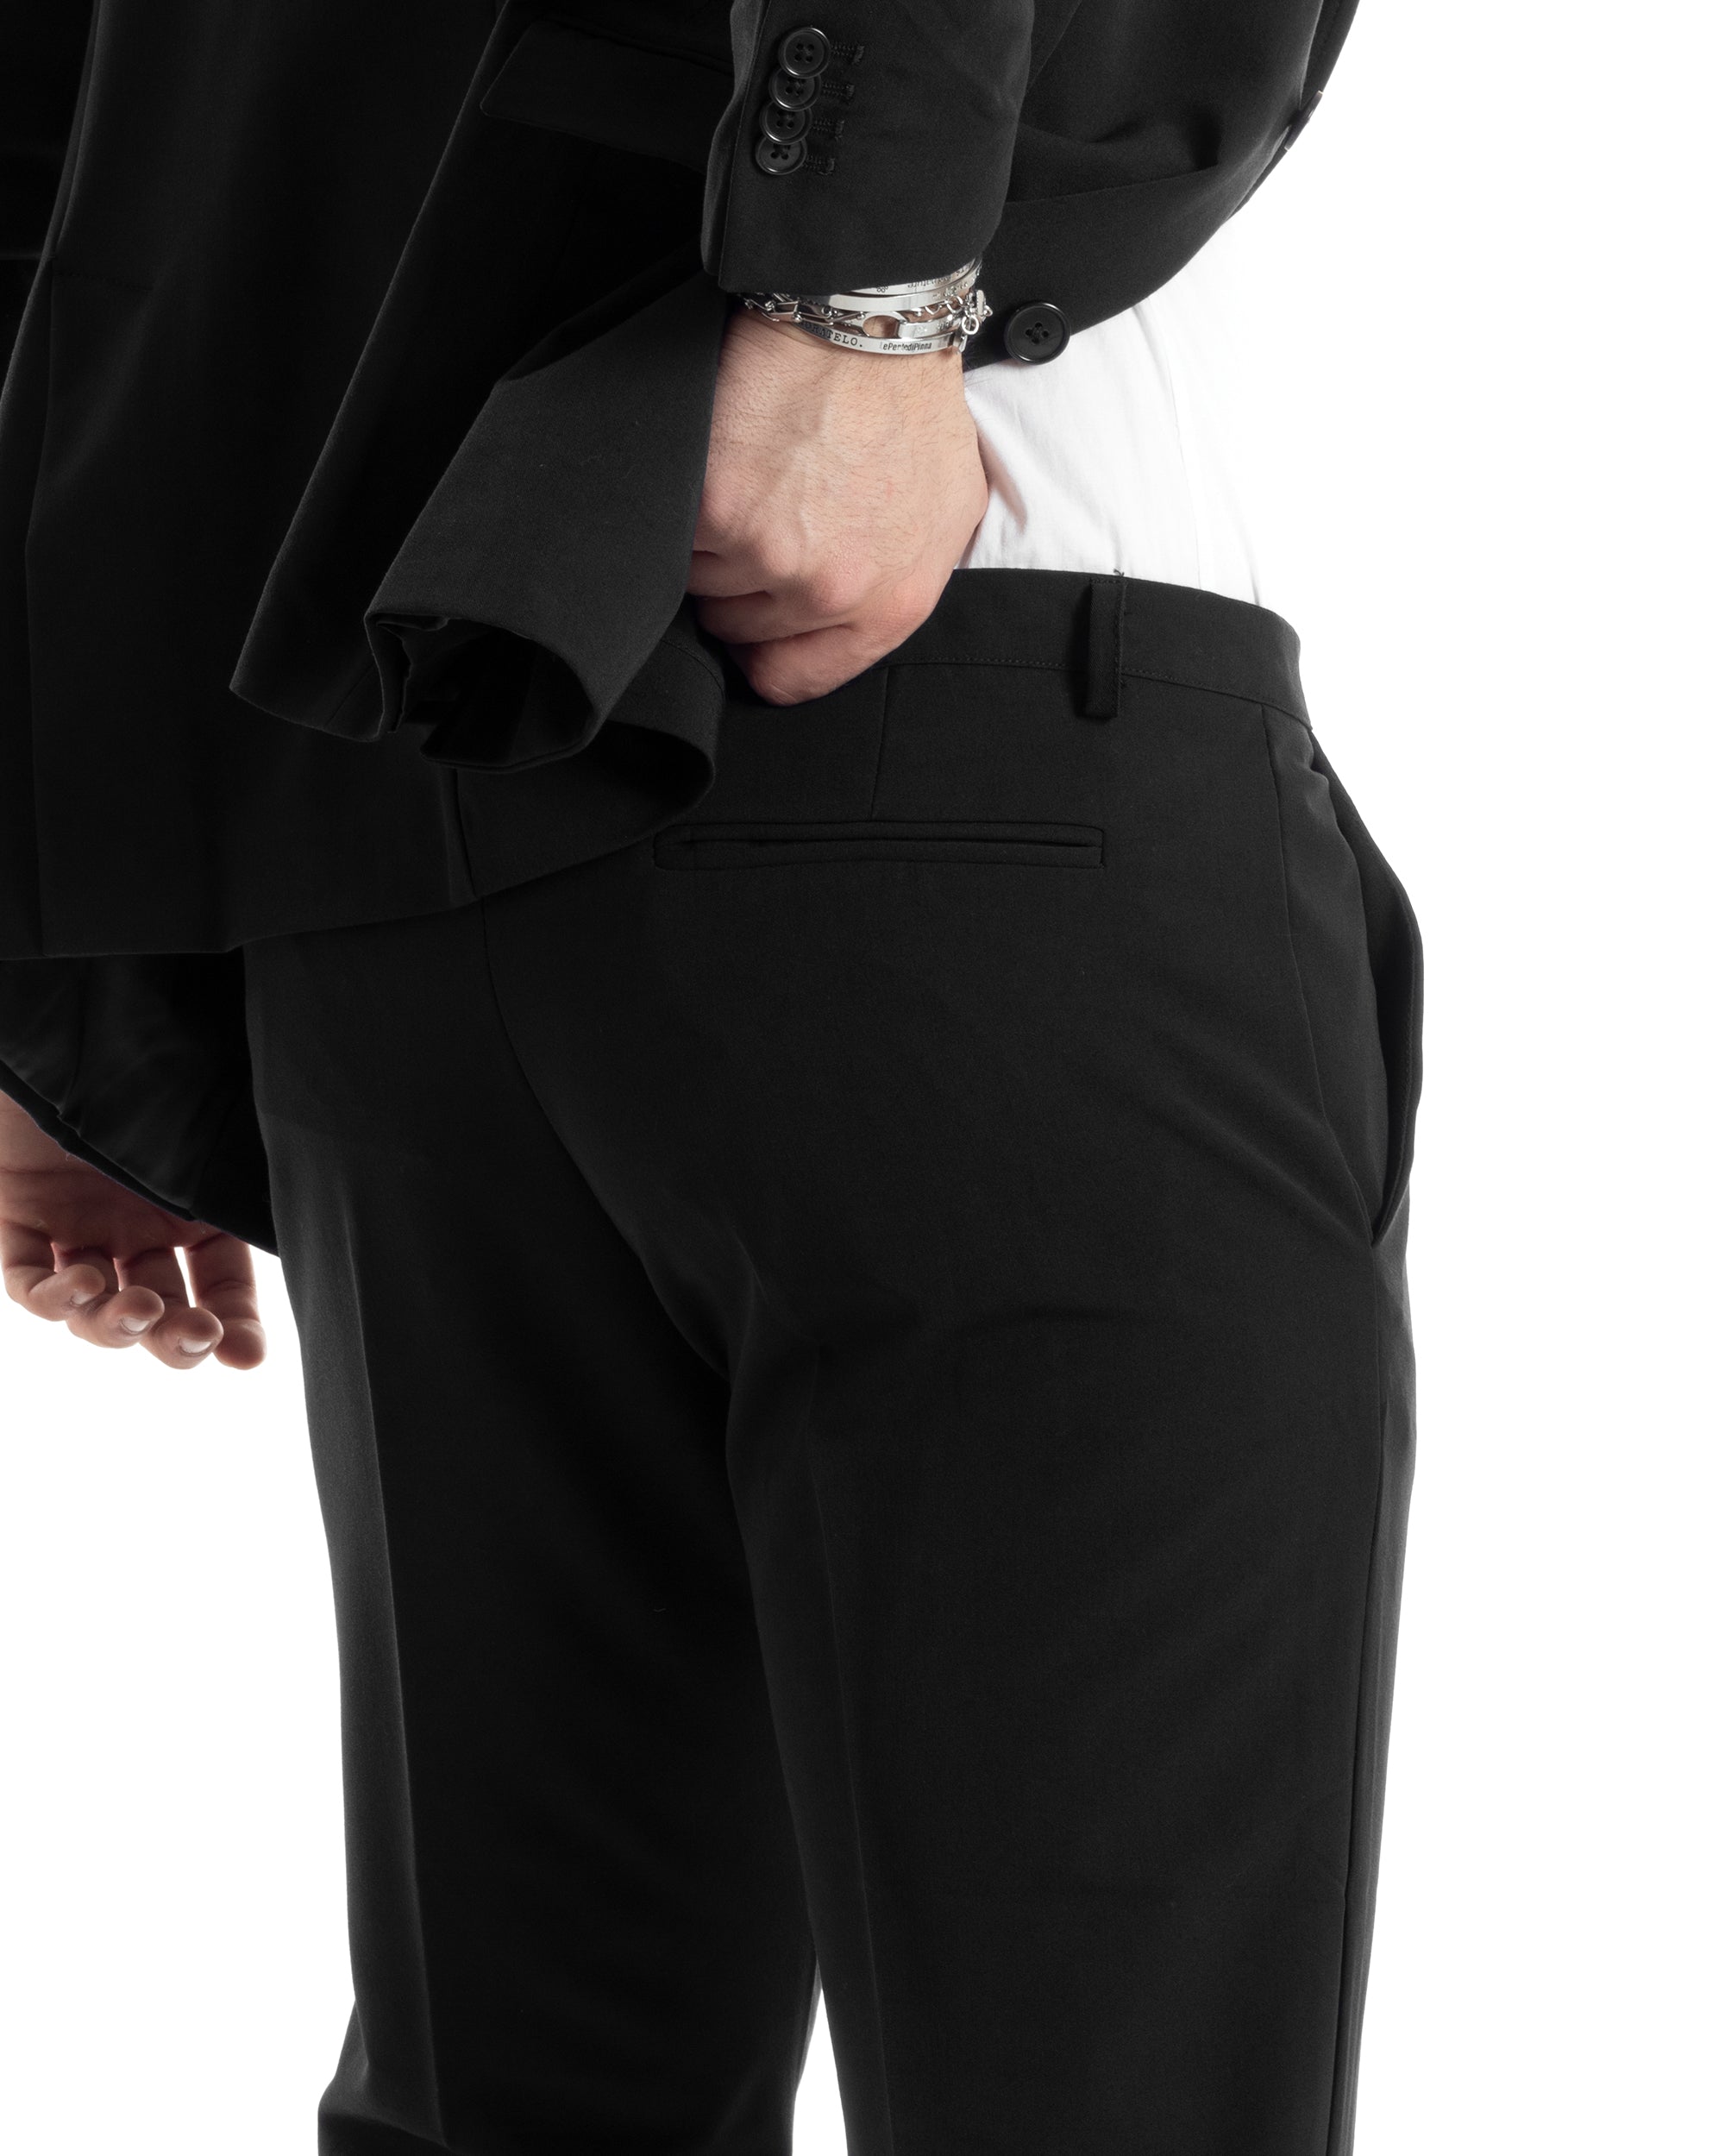 Abito Uomo Monopetto Vestito Completo Giacca Pantaloni Nero Tinta Unita Elegante Casual GIOSAL-AE1033A